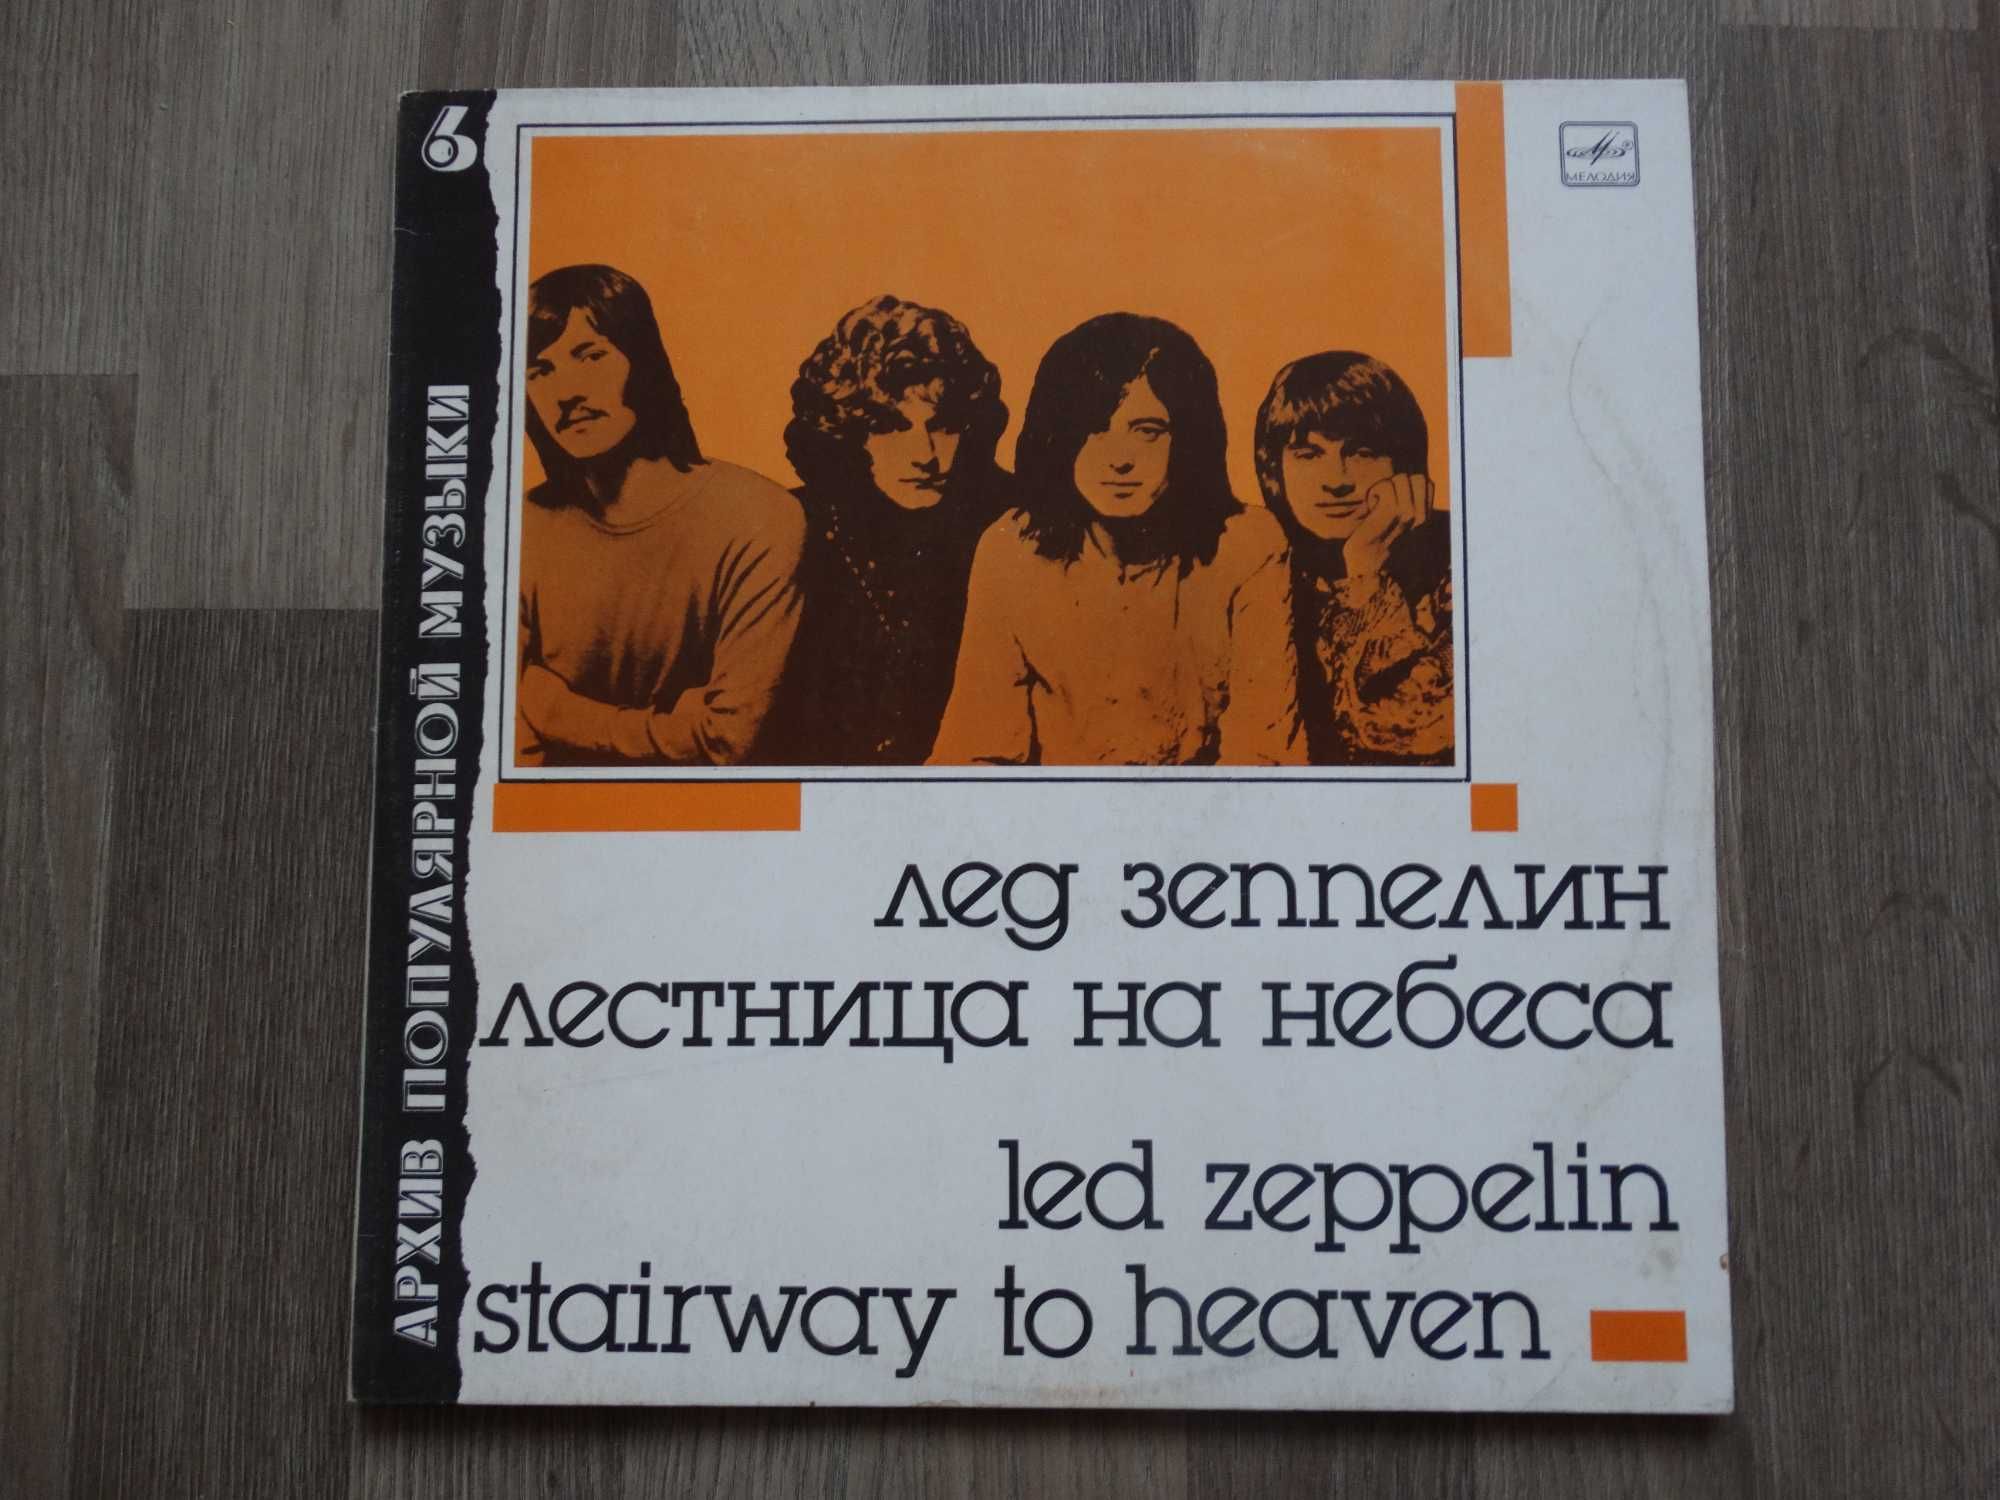 Виниловая пластинка: "Rolling Stones" "Creedence" "Led Zeppelin" НОВЫЙ